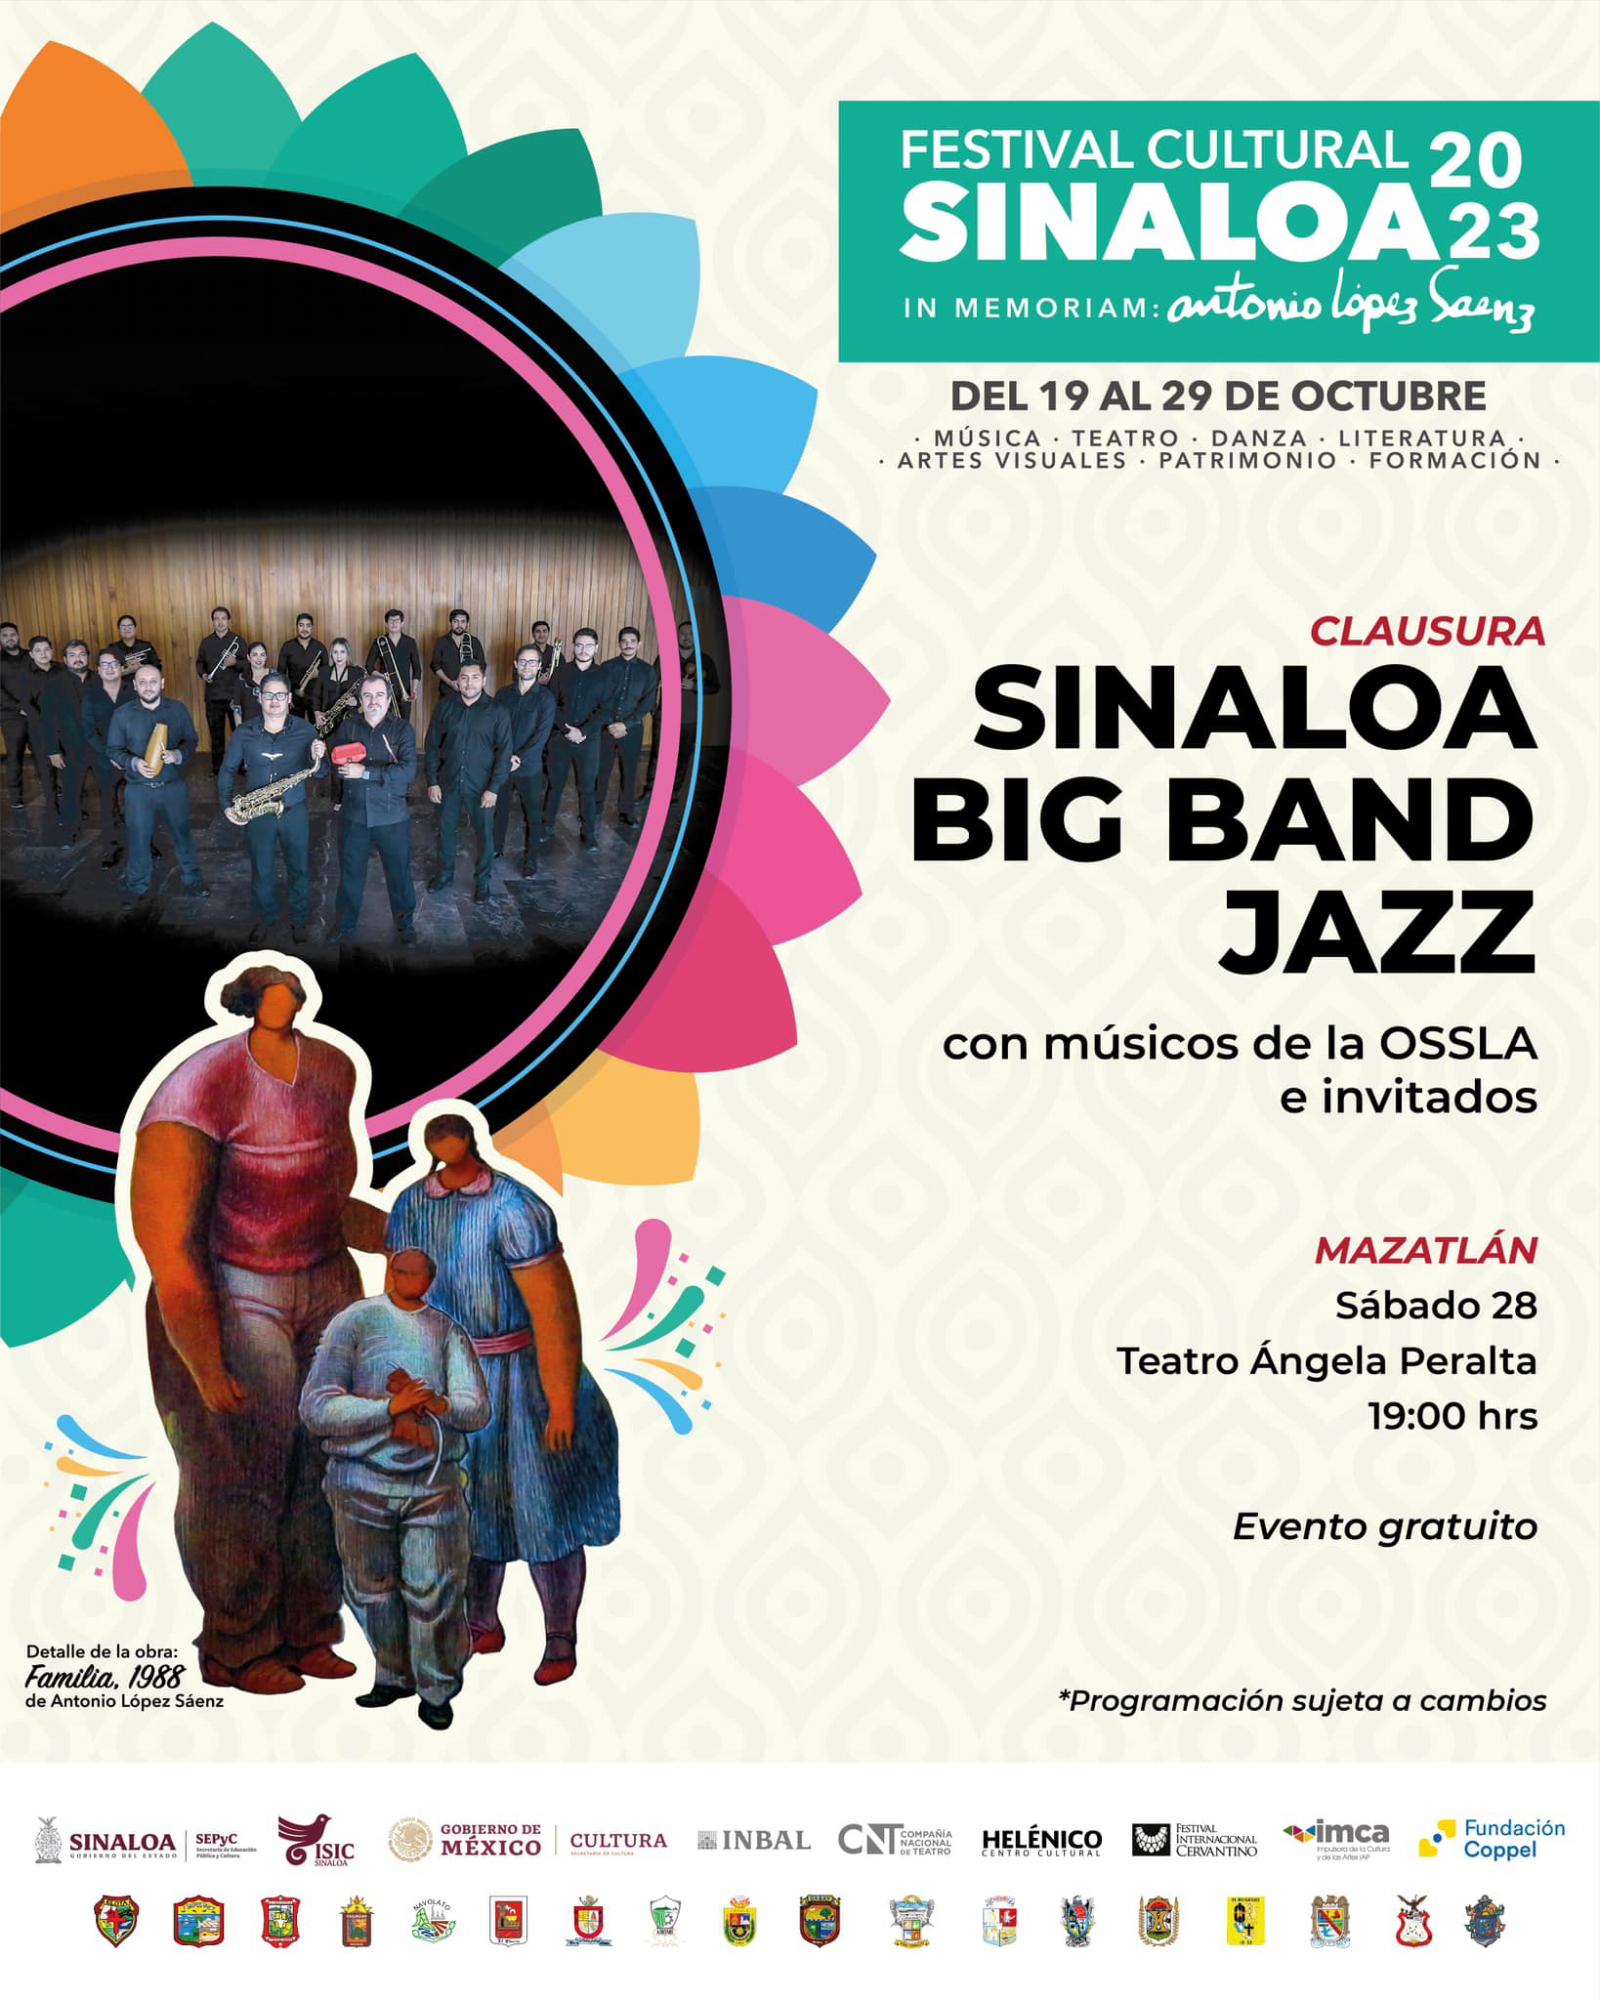 $!Big Band Jazz se presentará en el Teatro Ángela Peralta de Mazatlán, el sábado 28.